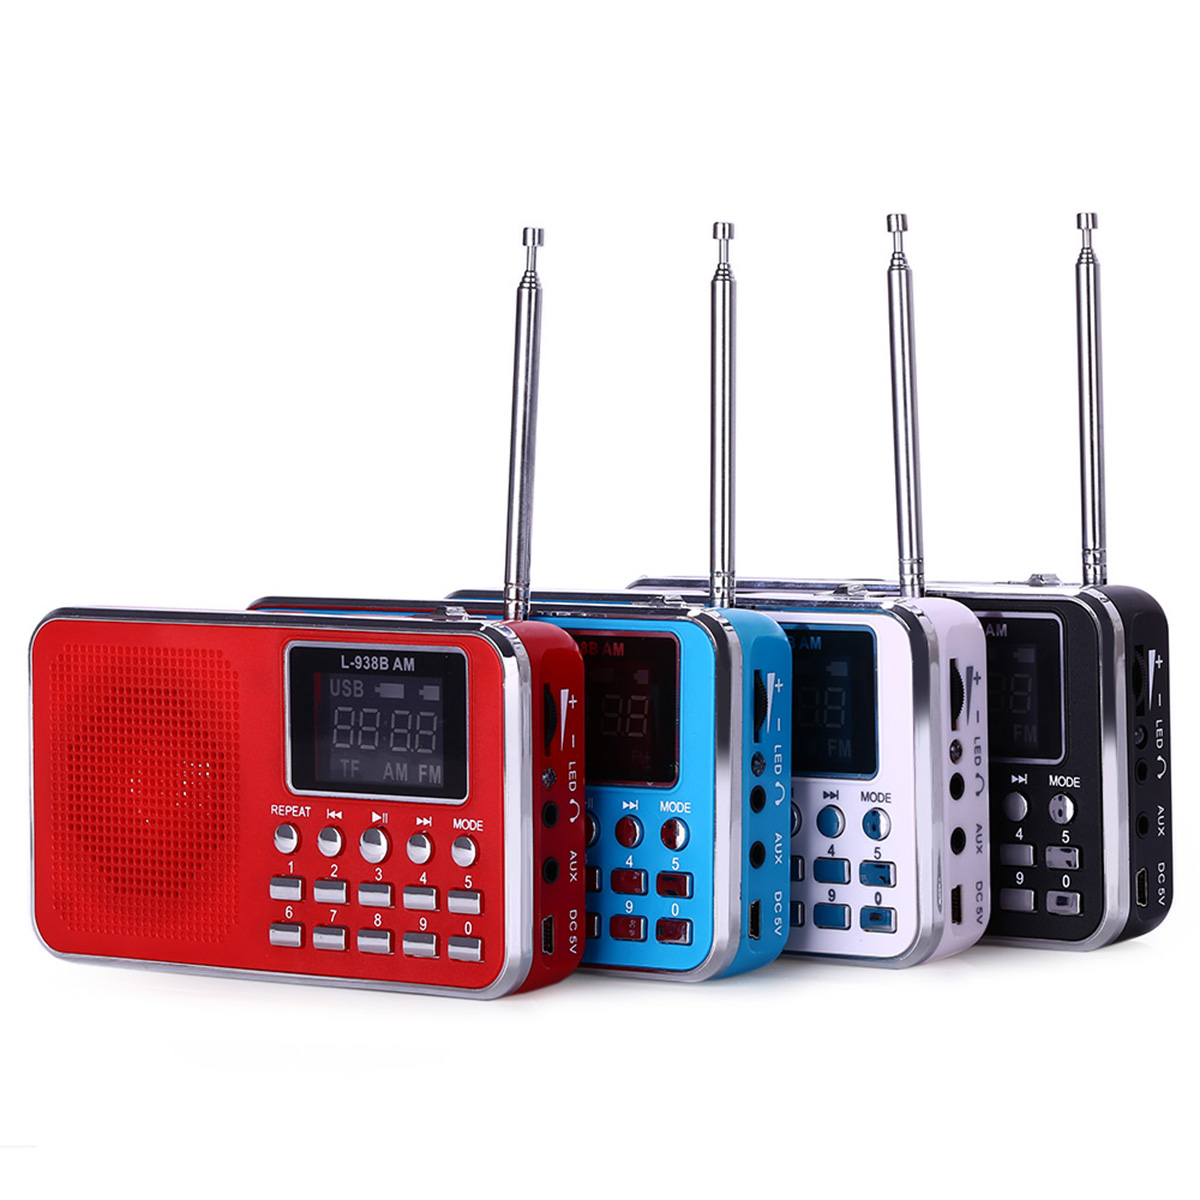 L-938B-AM-FM-AM-Mini-Radio-Digital-LCD-Speaker-MP3-Music-Player-AUX-USB-TF-with-LED-Light-1156843